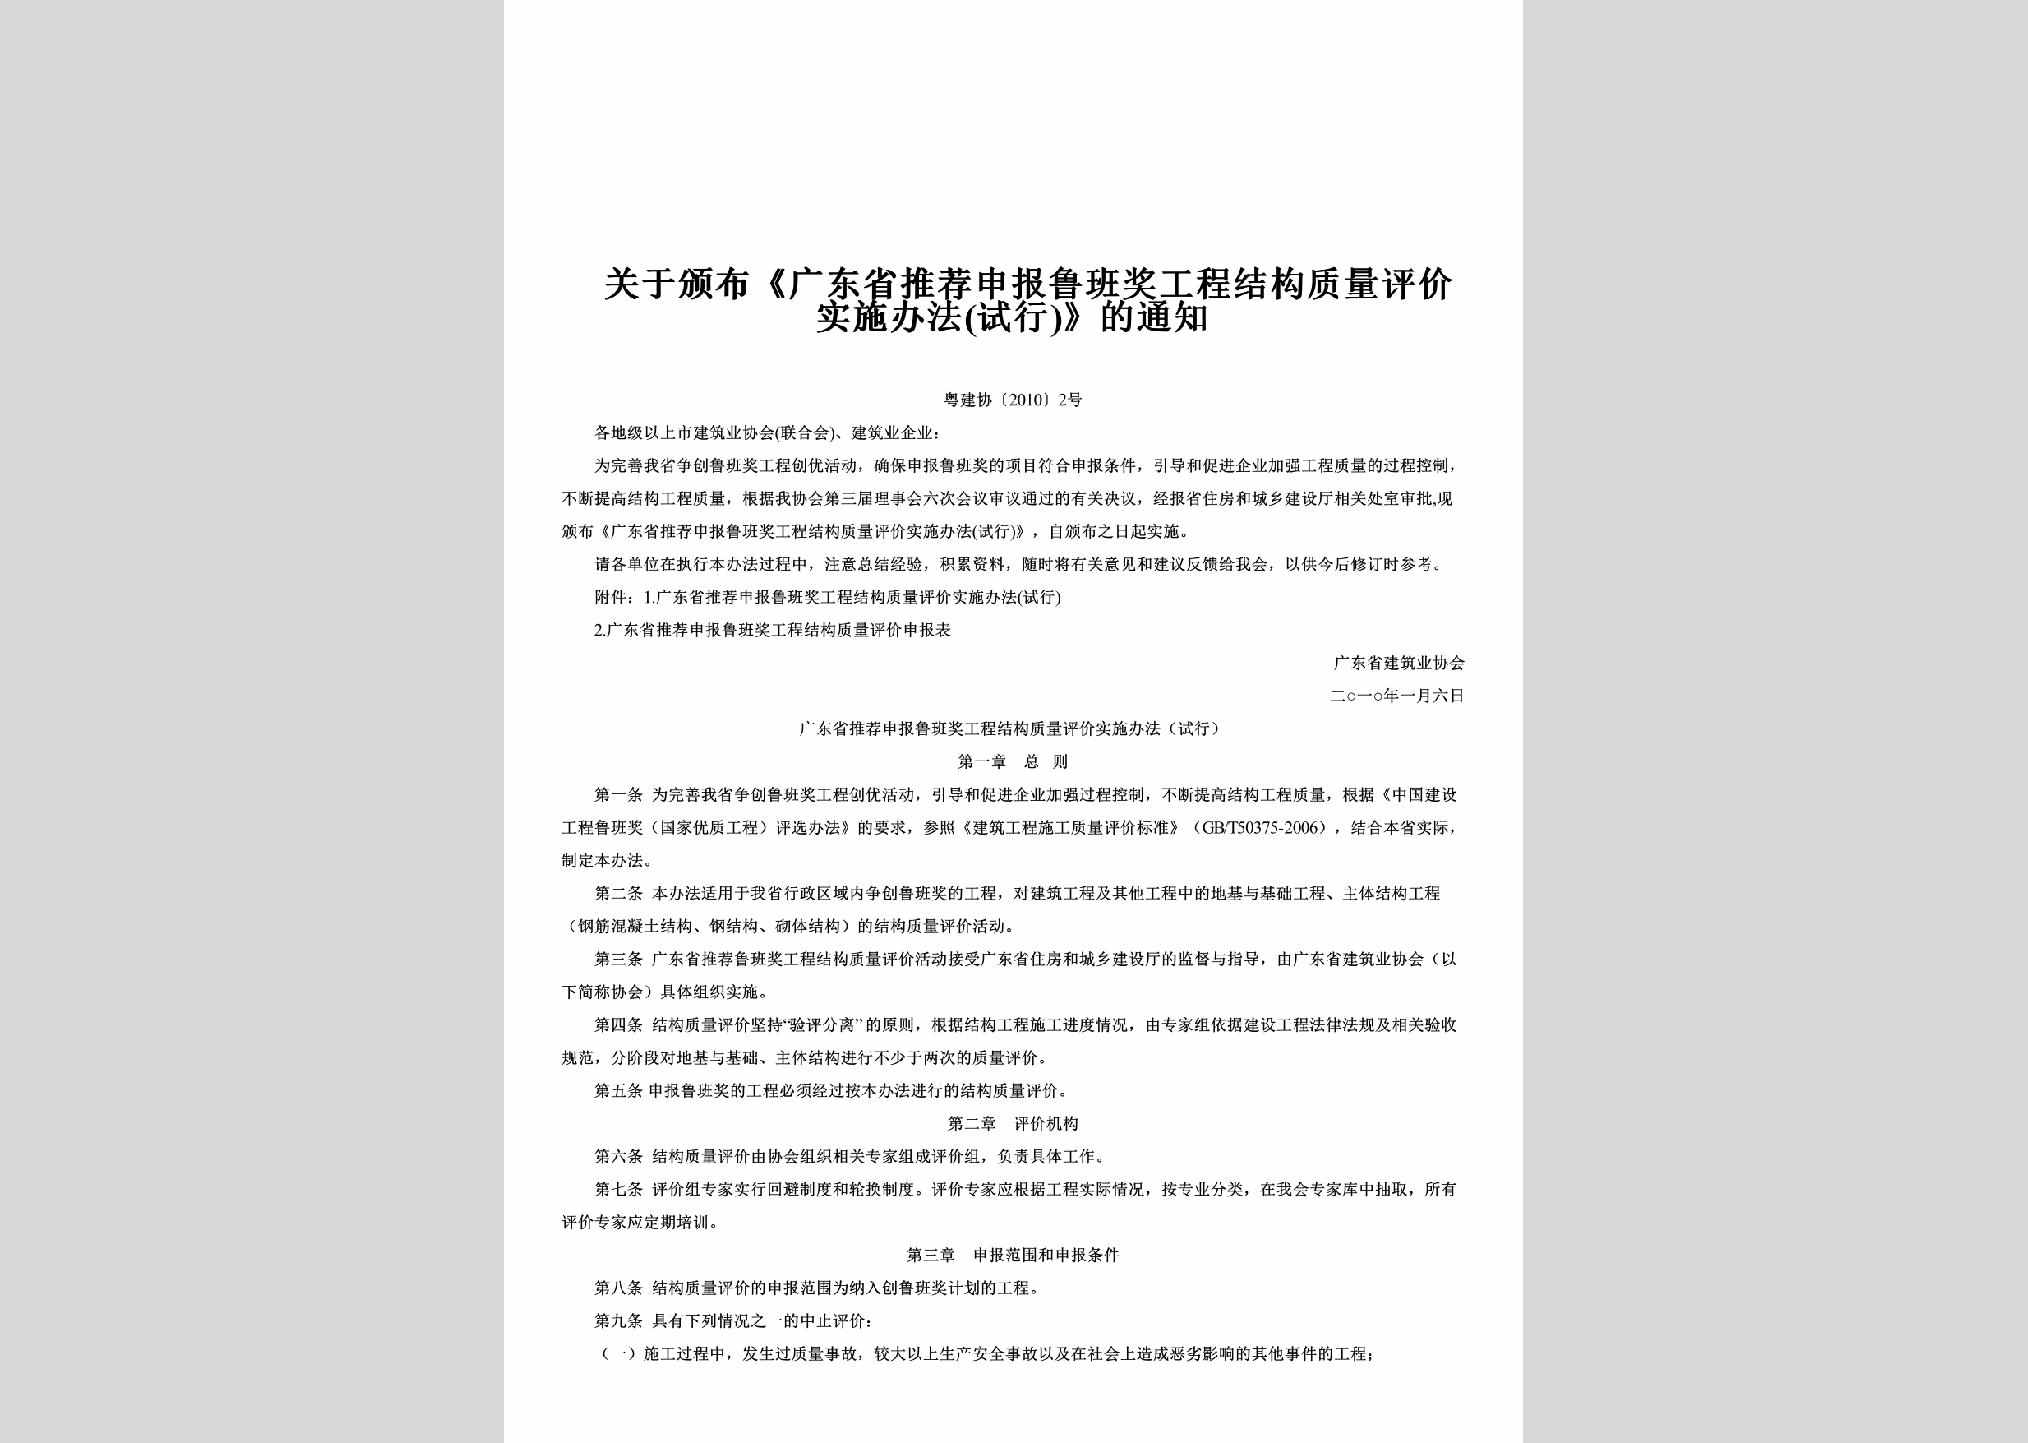 粤建协[2010]2号：关于颁布《广东省推荐申报鲁班奖工程结构质量评价实施办法(试行)》的通知